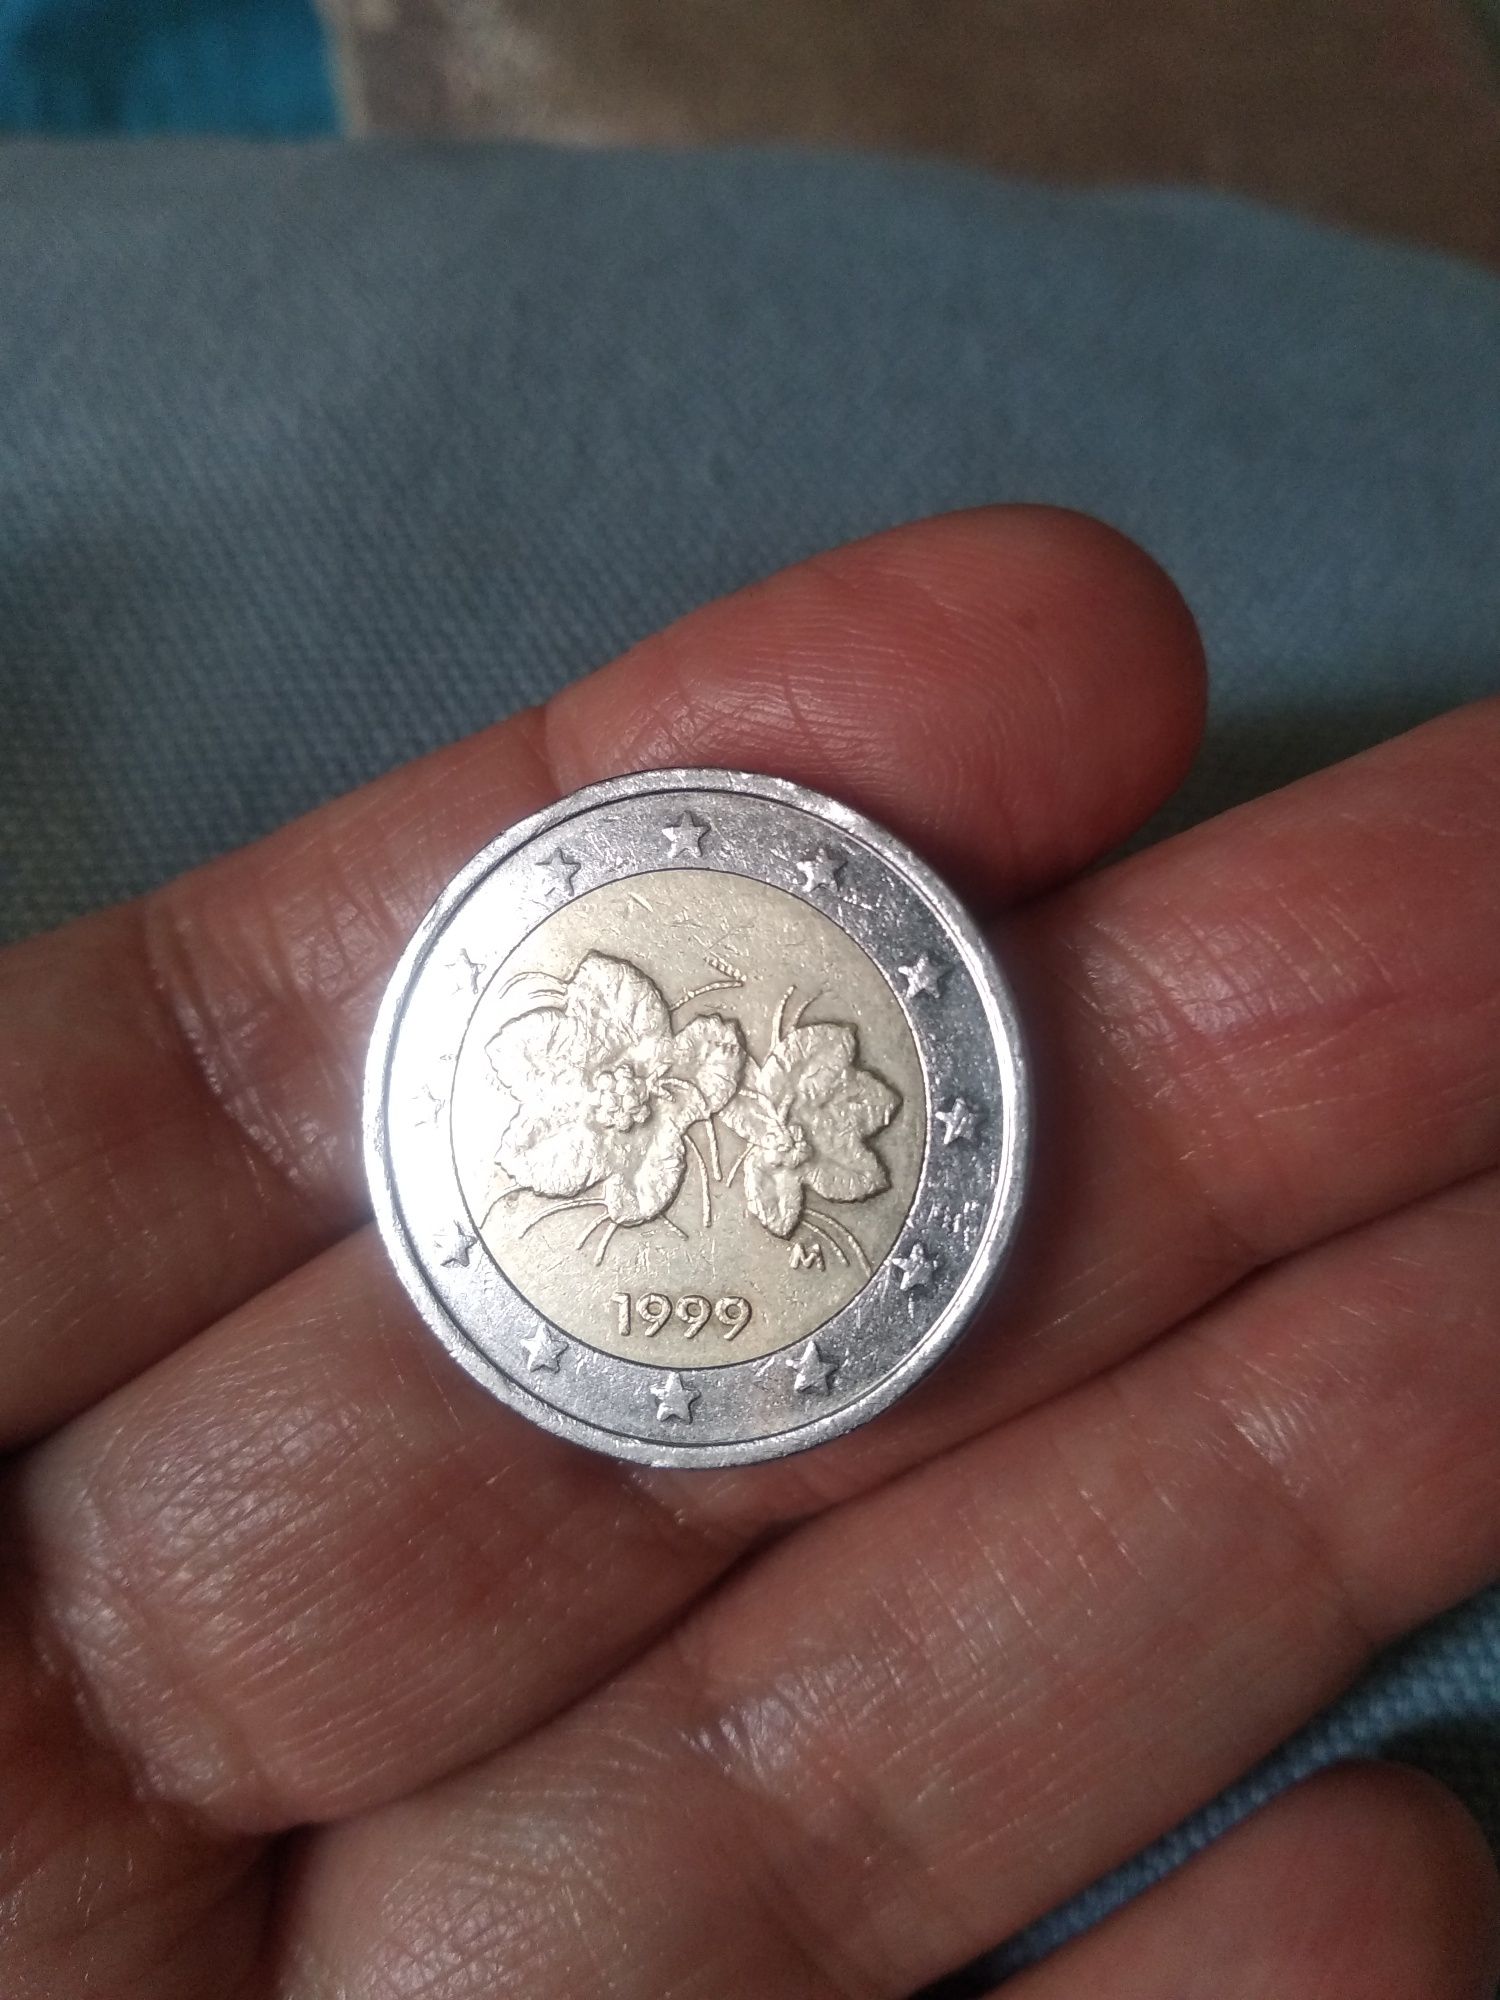 Moedas de 2€ raras Grécia/UE francesa/ Finlândia 1999 etc